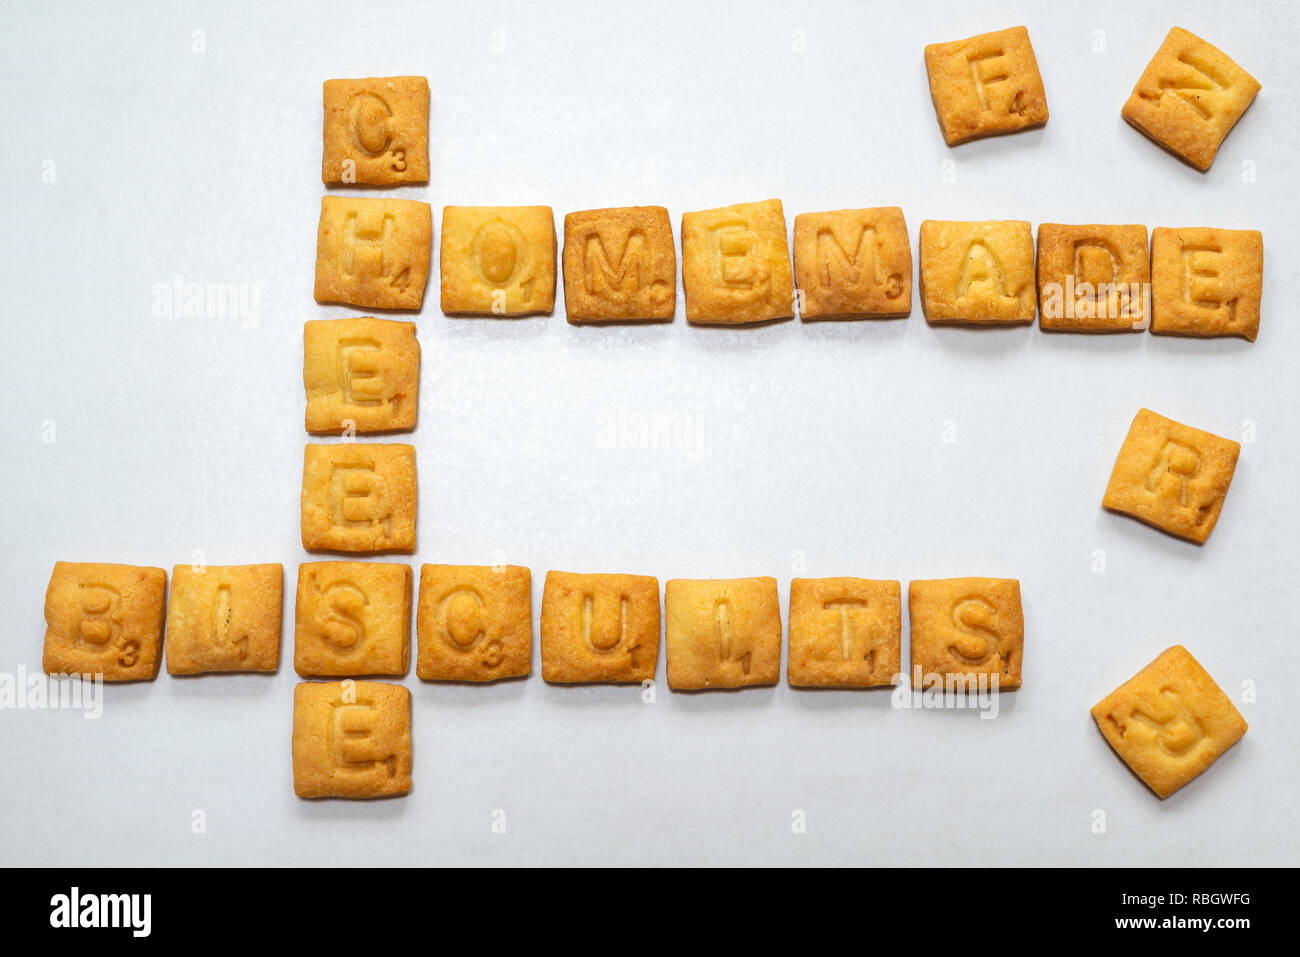 Formaggio di casa biscotti - parole di scrabble realizzati dai biscotti / cookies. Foto Stock